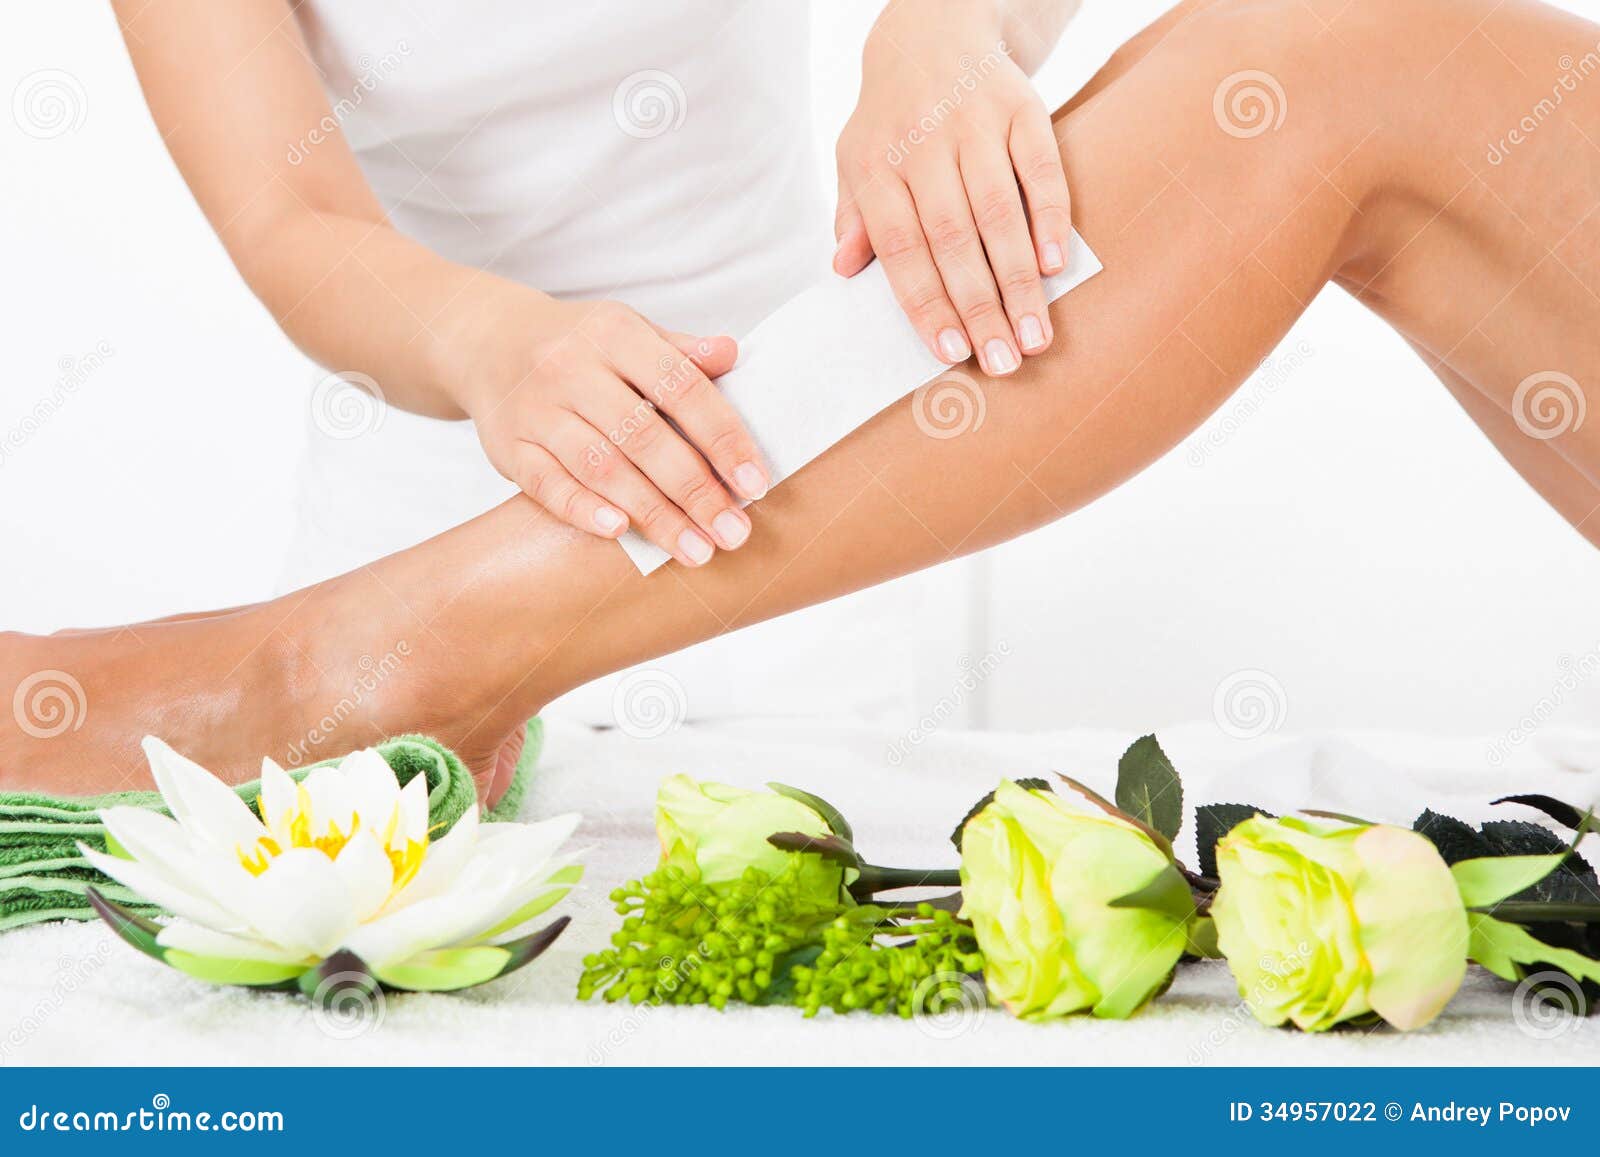 beautician waxing a woman's leg